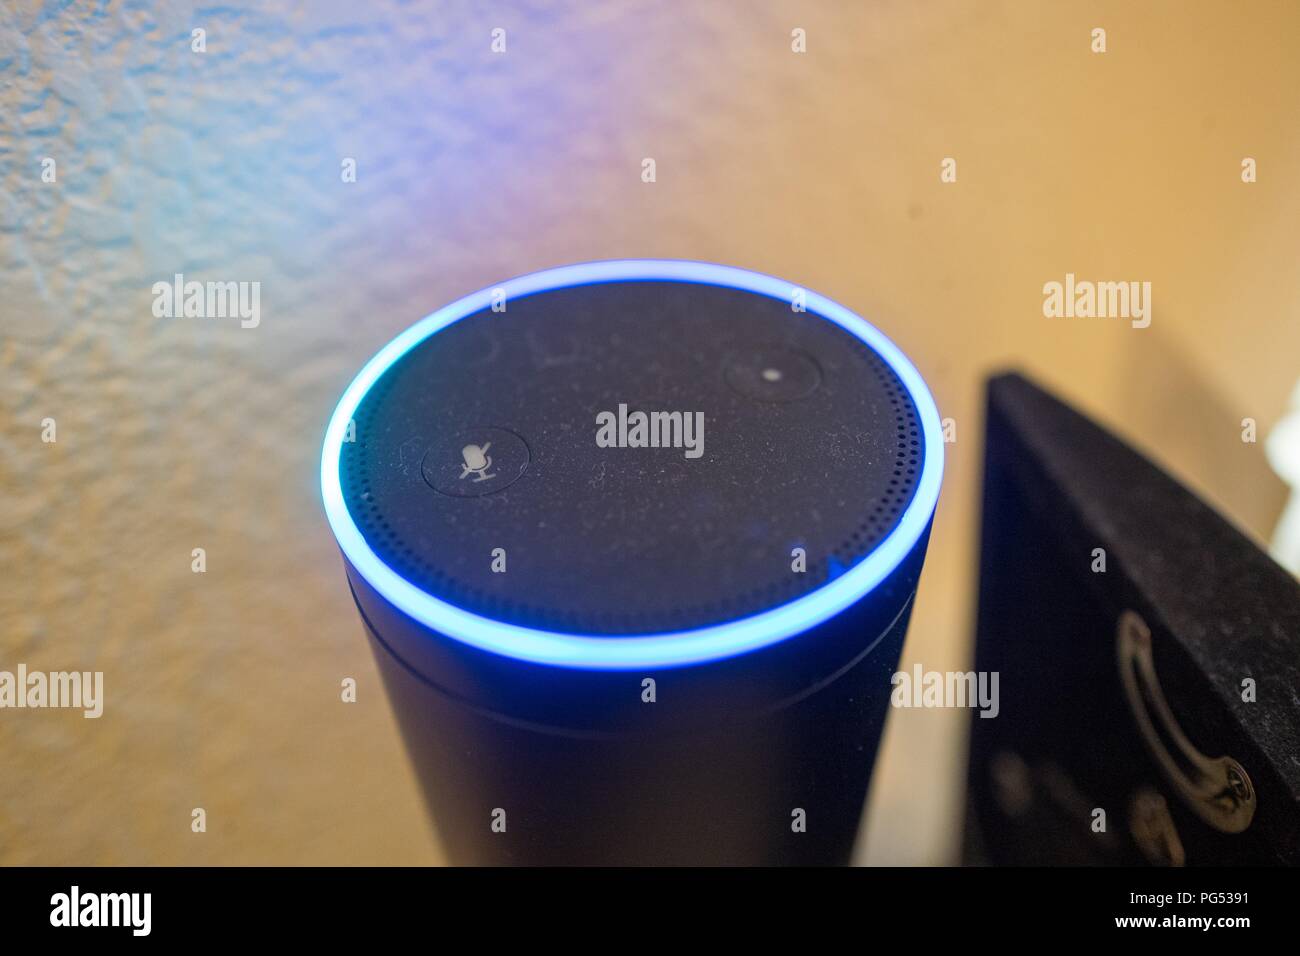 Close-up di Amazon eco Altoparlante smart e Assistente vocale illuminato con luce blu anello, un dispositivo che utilizza il servizio Amazon da Amazon per riconoscere e rispondere agli utenti dei comandi vocali, in una casa suburbana impostazione, 7 maggio 2018. () Foto Stock